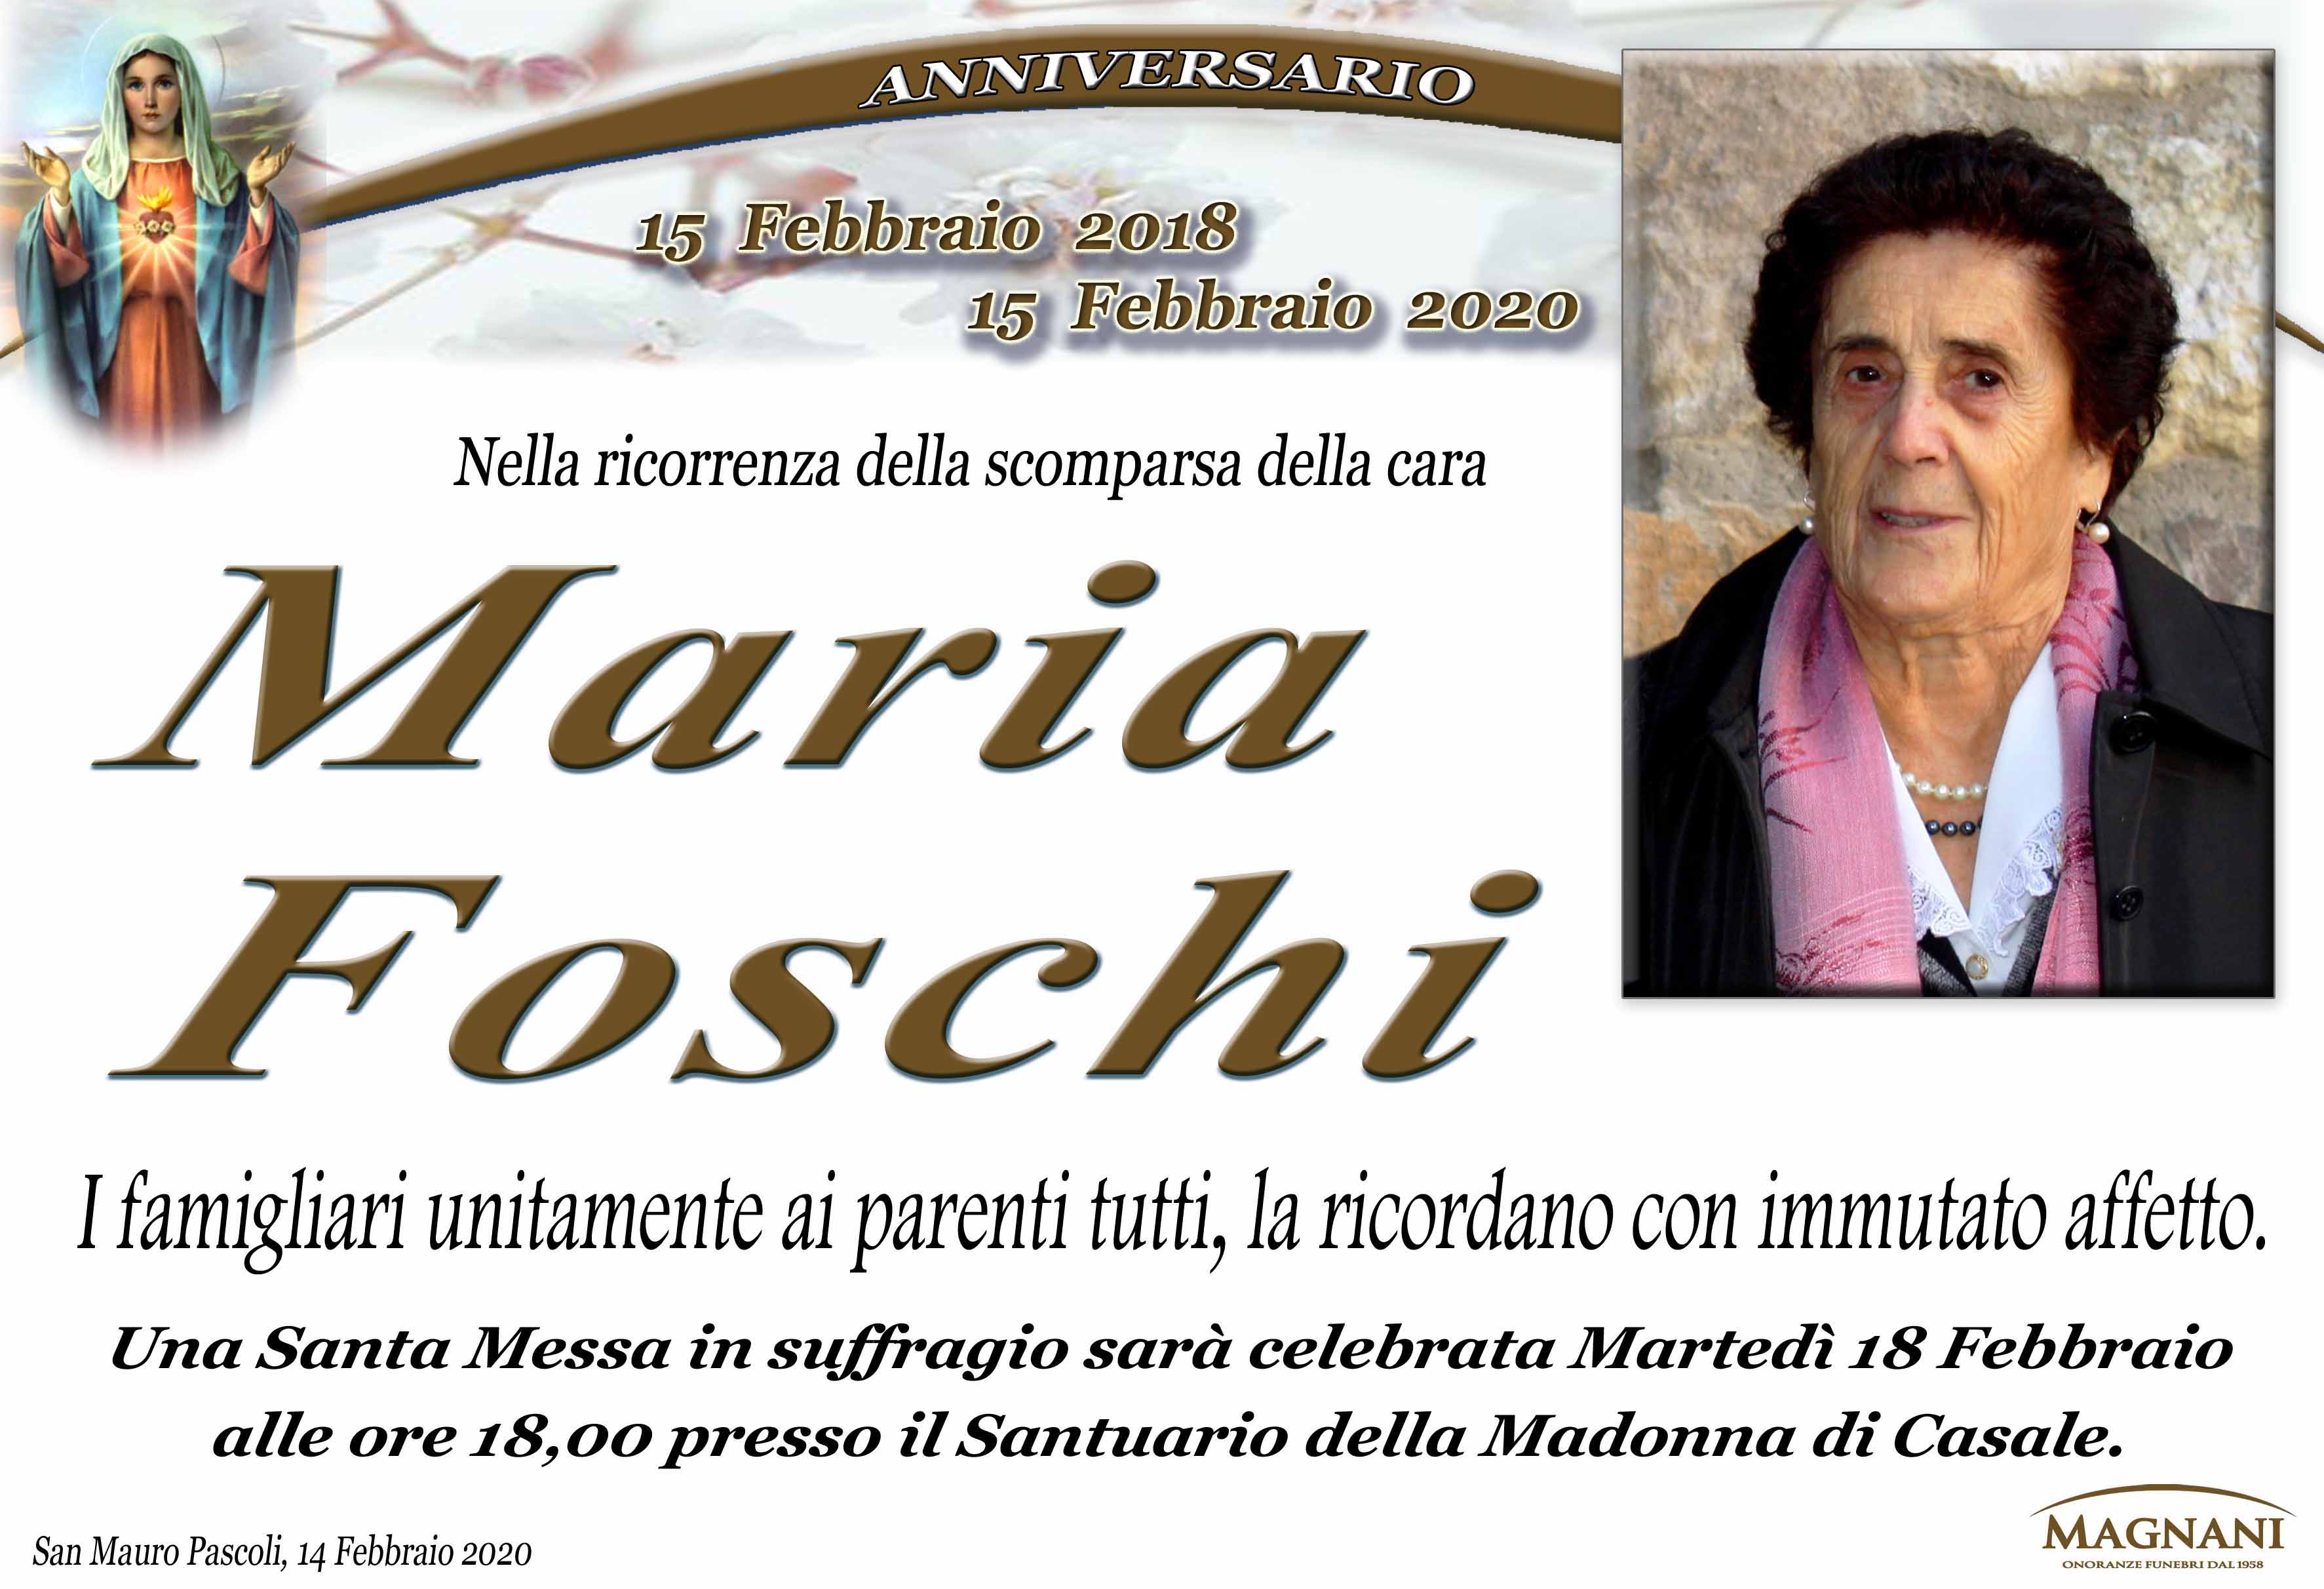 Maria Foschi